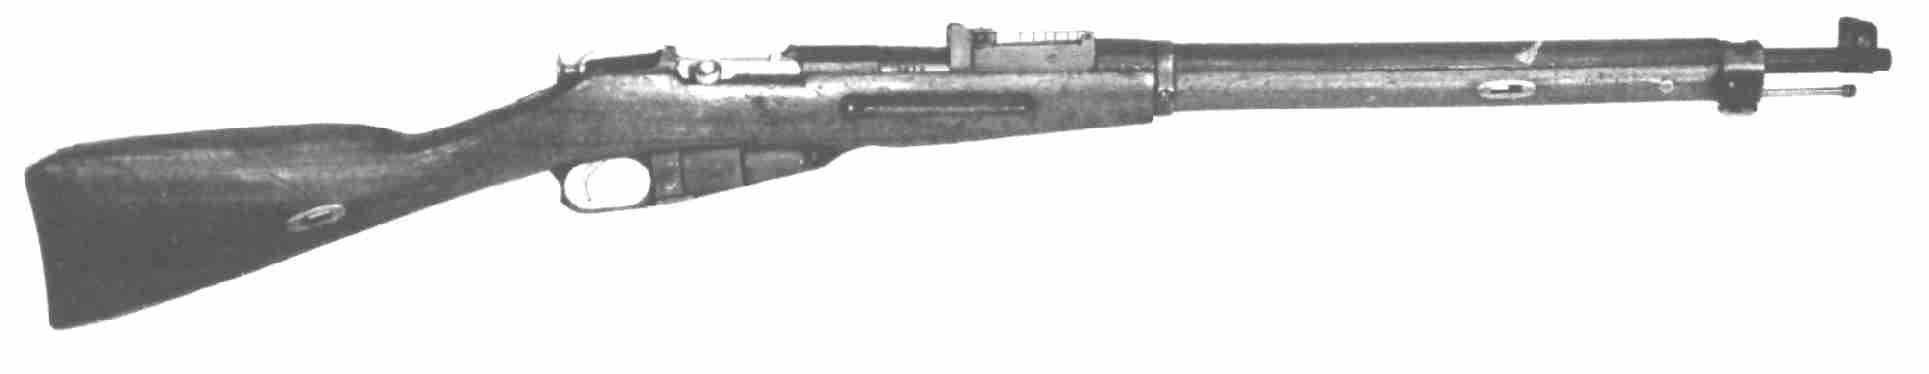 Kivääri m 28-30